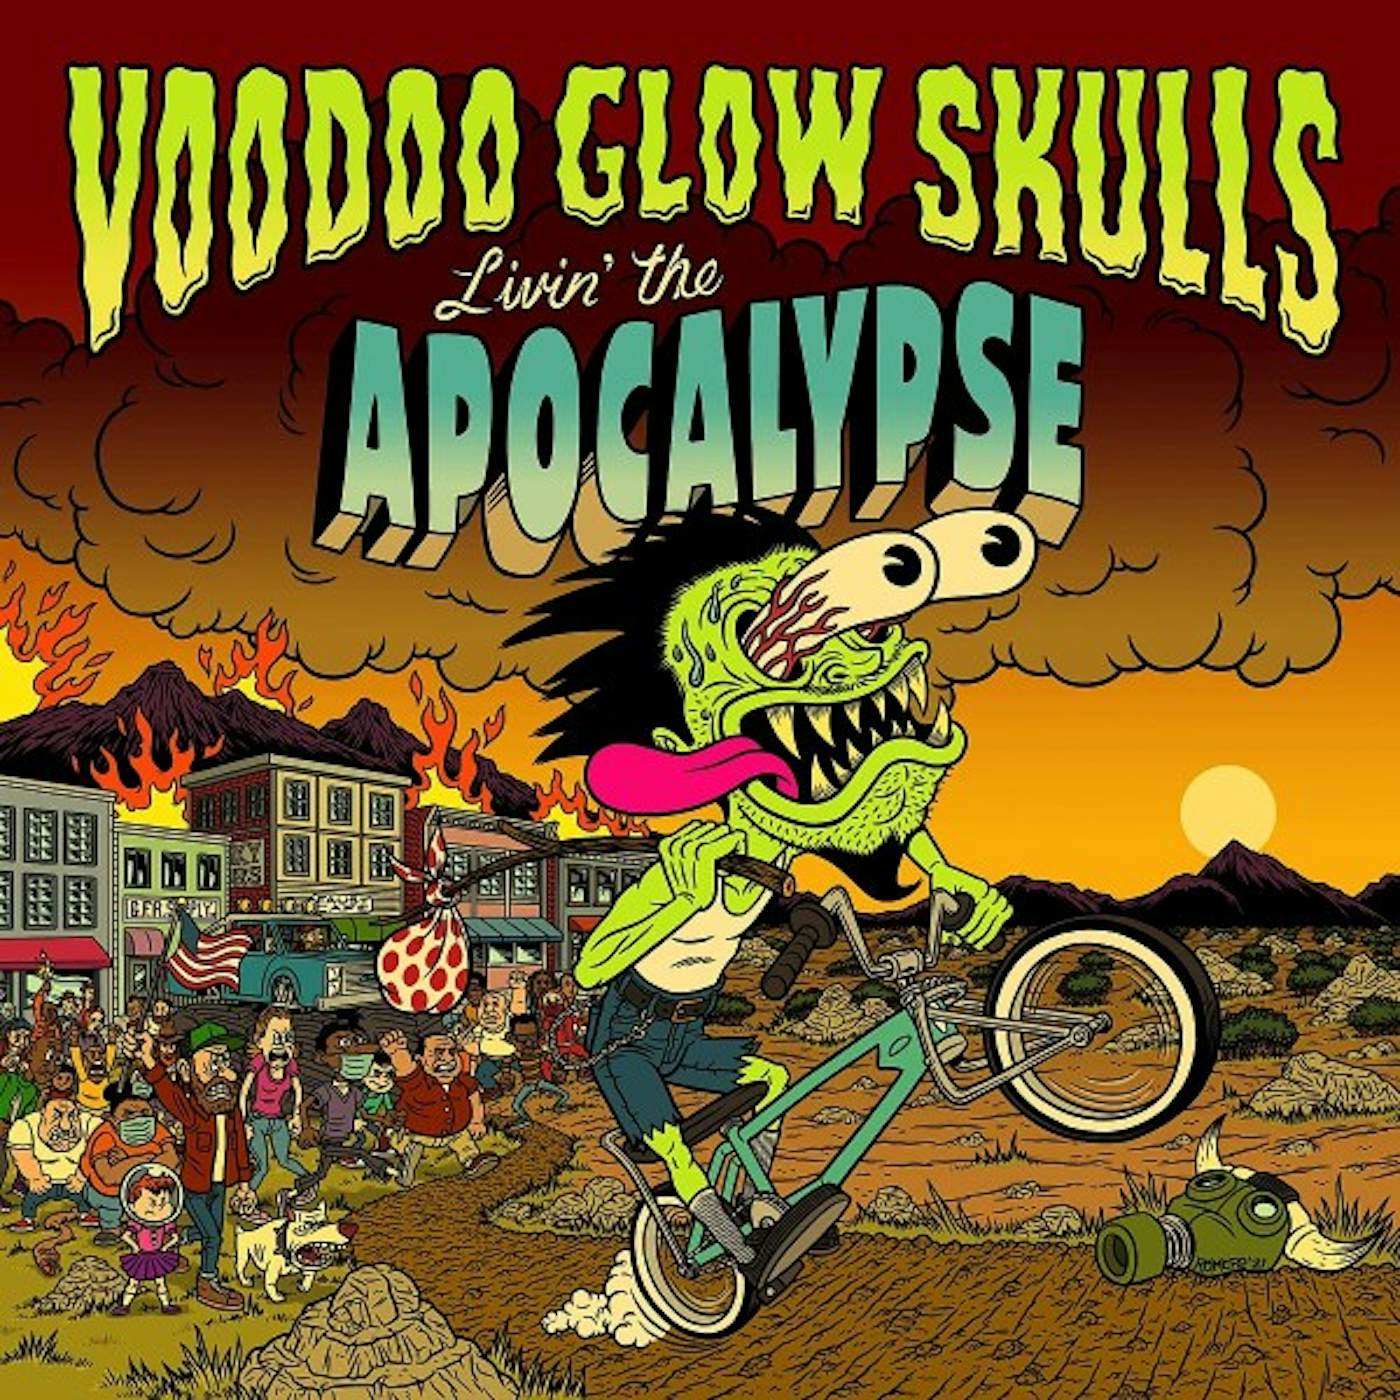 Voodoo Glow Skulls Livin' the Apocalypse Vinyl Record